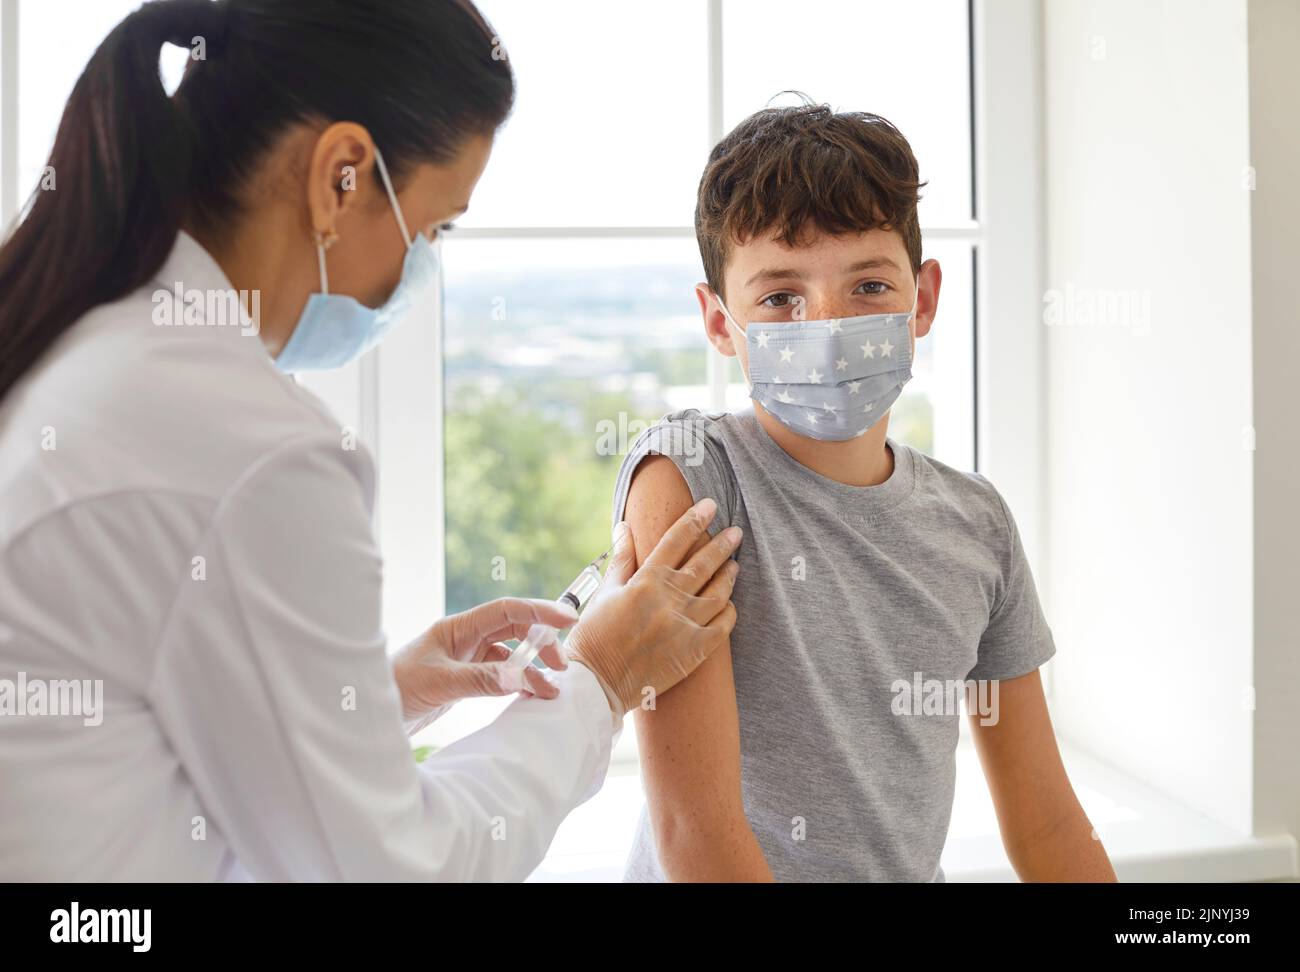 Niño escolar con mascarilla médica recibiendo una vacuna que lo protegerá durante una pandemia Foto de stock